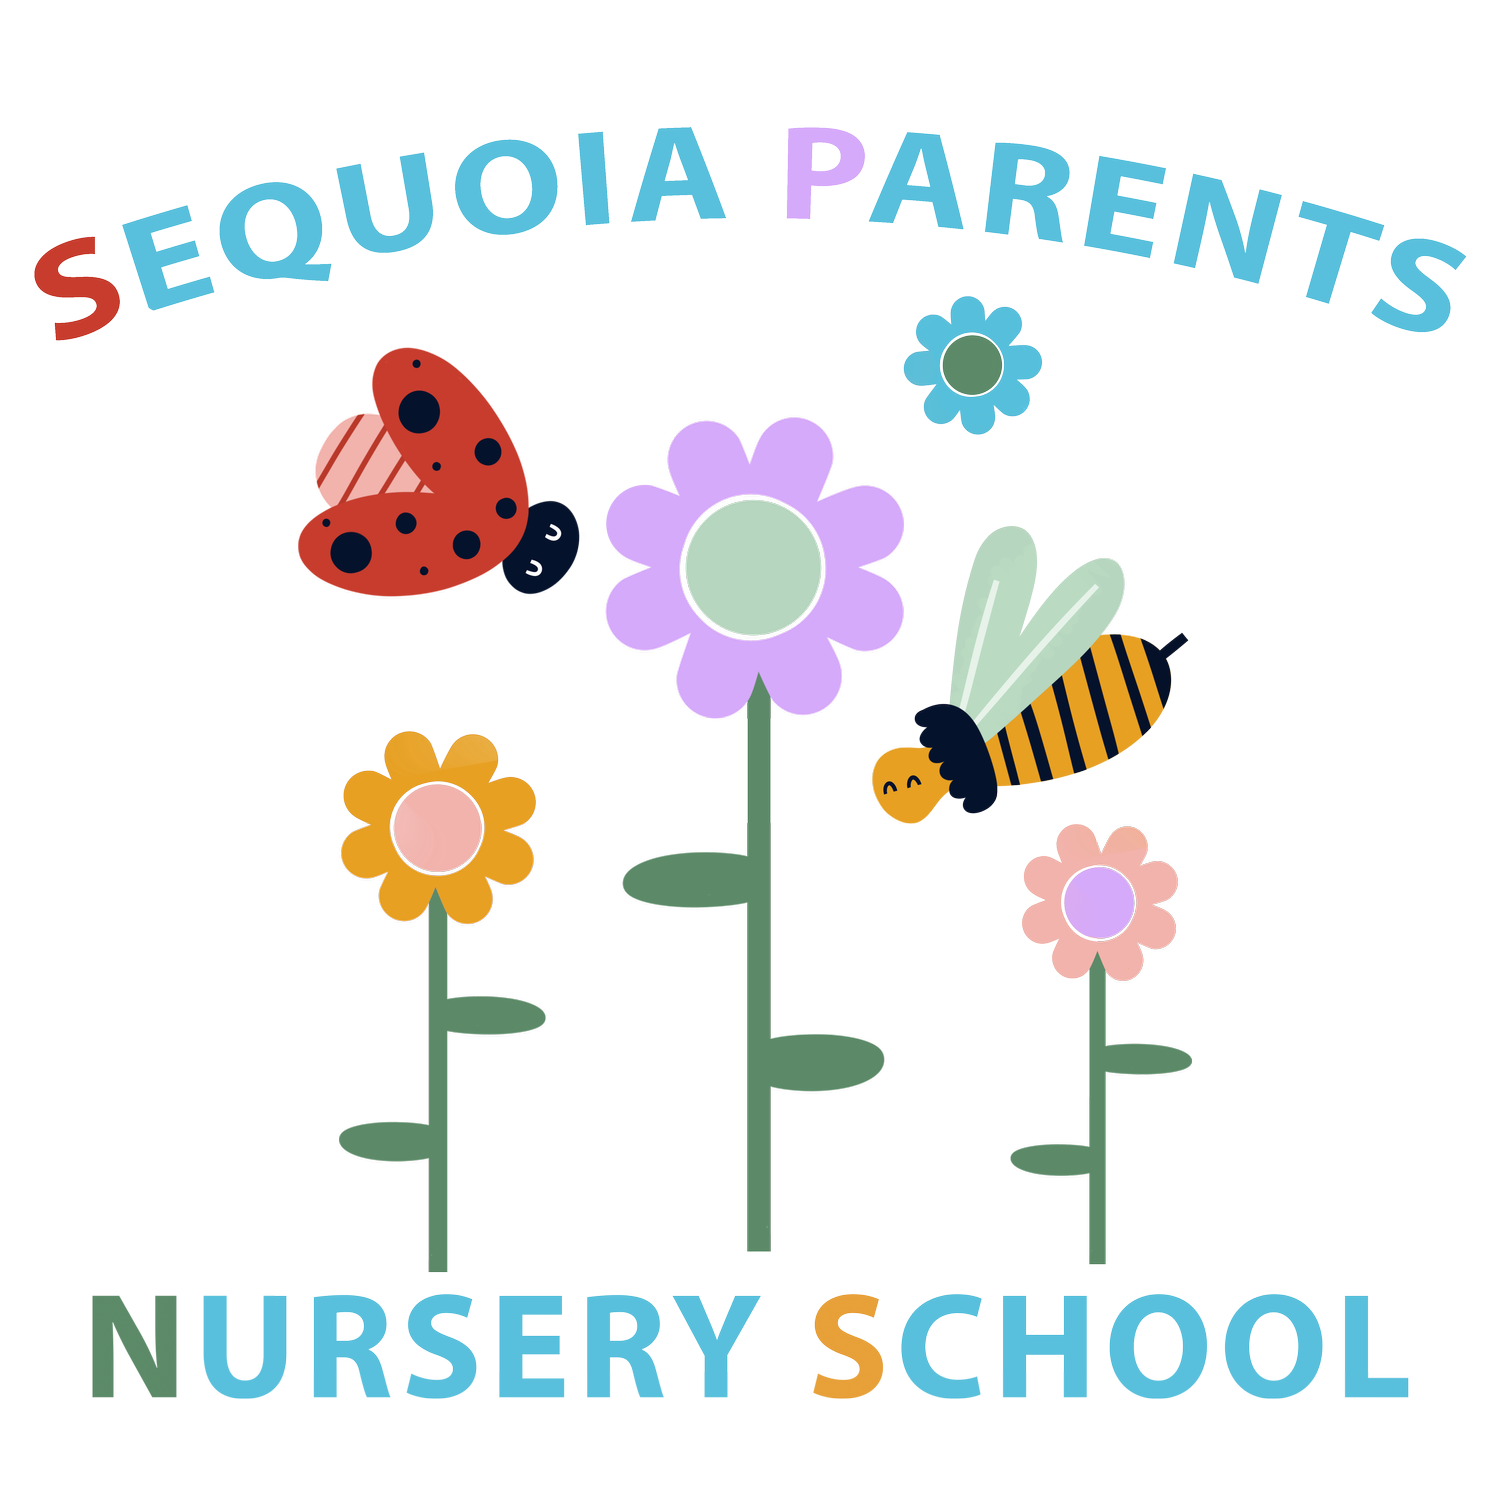 Sequoia Parents Nursery School